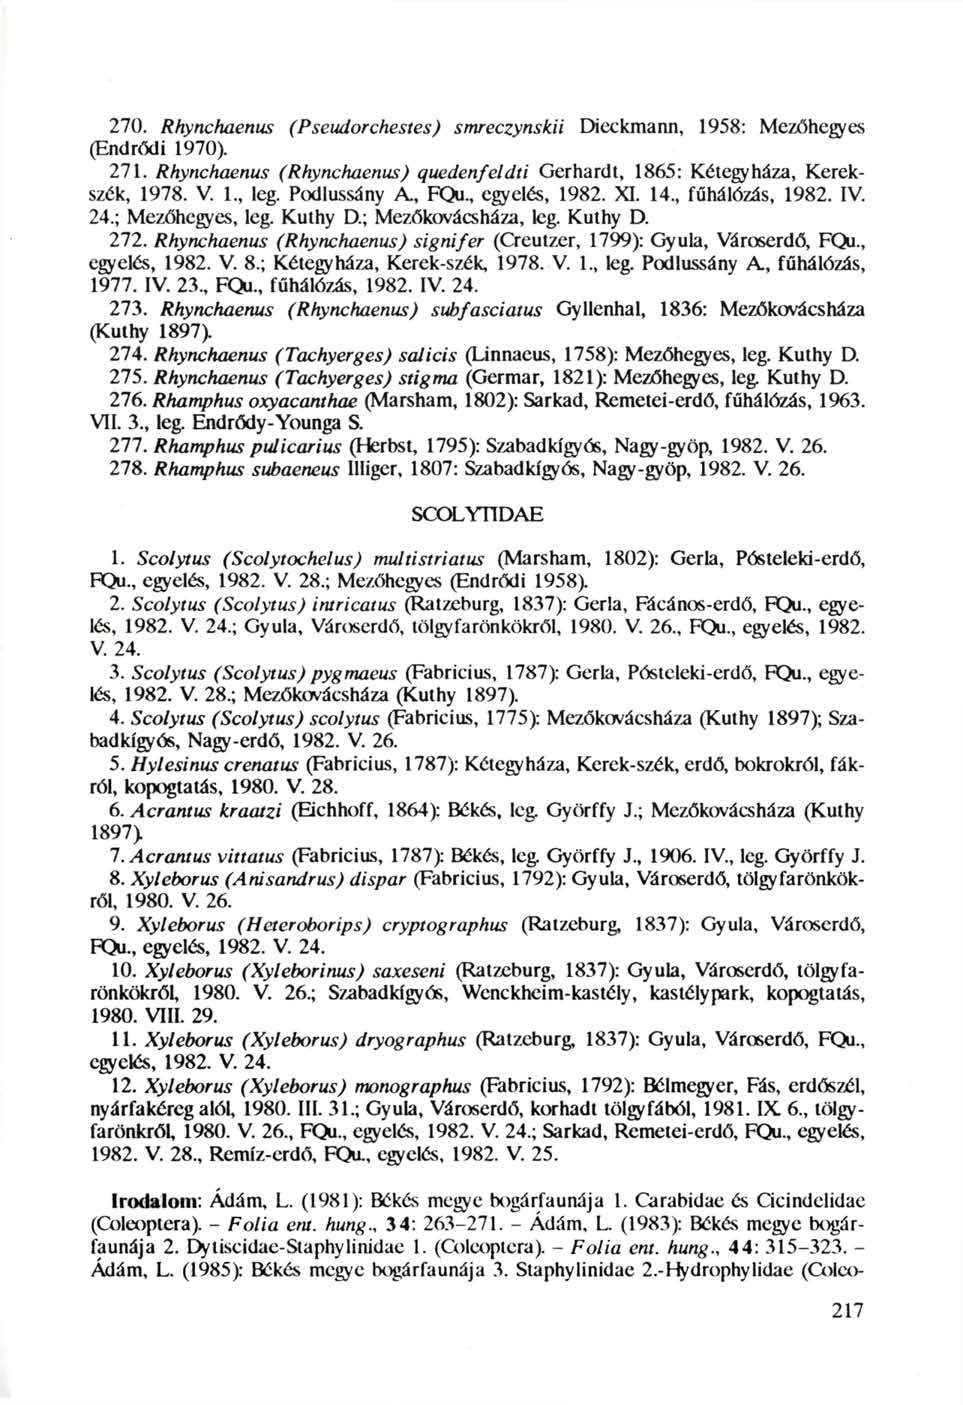 270. Rhynchaenus (Pseudotehestes) smreczynskü Dieckmann, 1958: Mezőhegyes (Endrődi 1970). 271. Rhynchaenus (Rhynchaenus) quedenfeldti Gerhardt, 1865: Kétegyháza, Kerekszék, 1978. V. 1, leg.